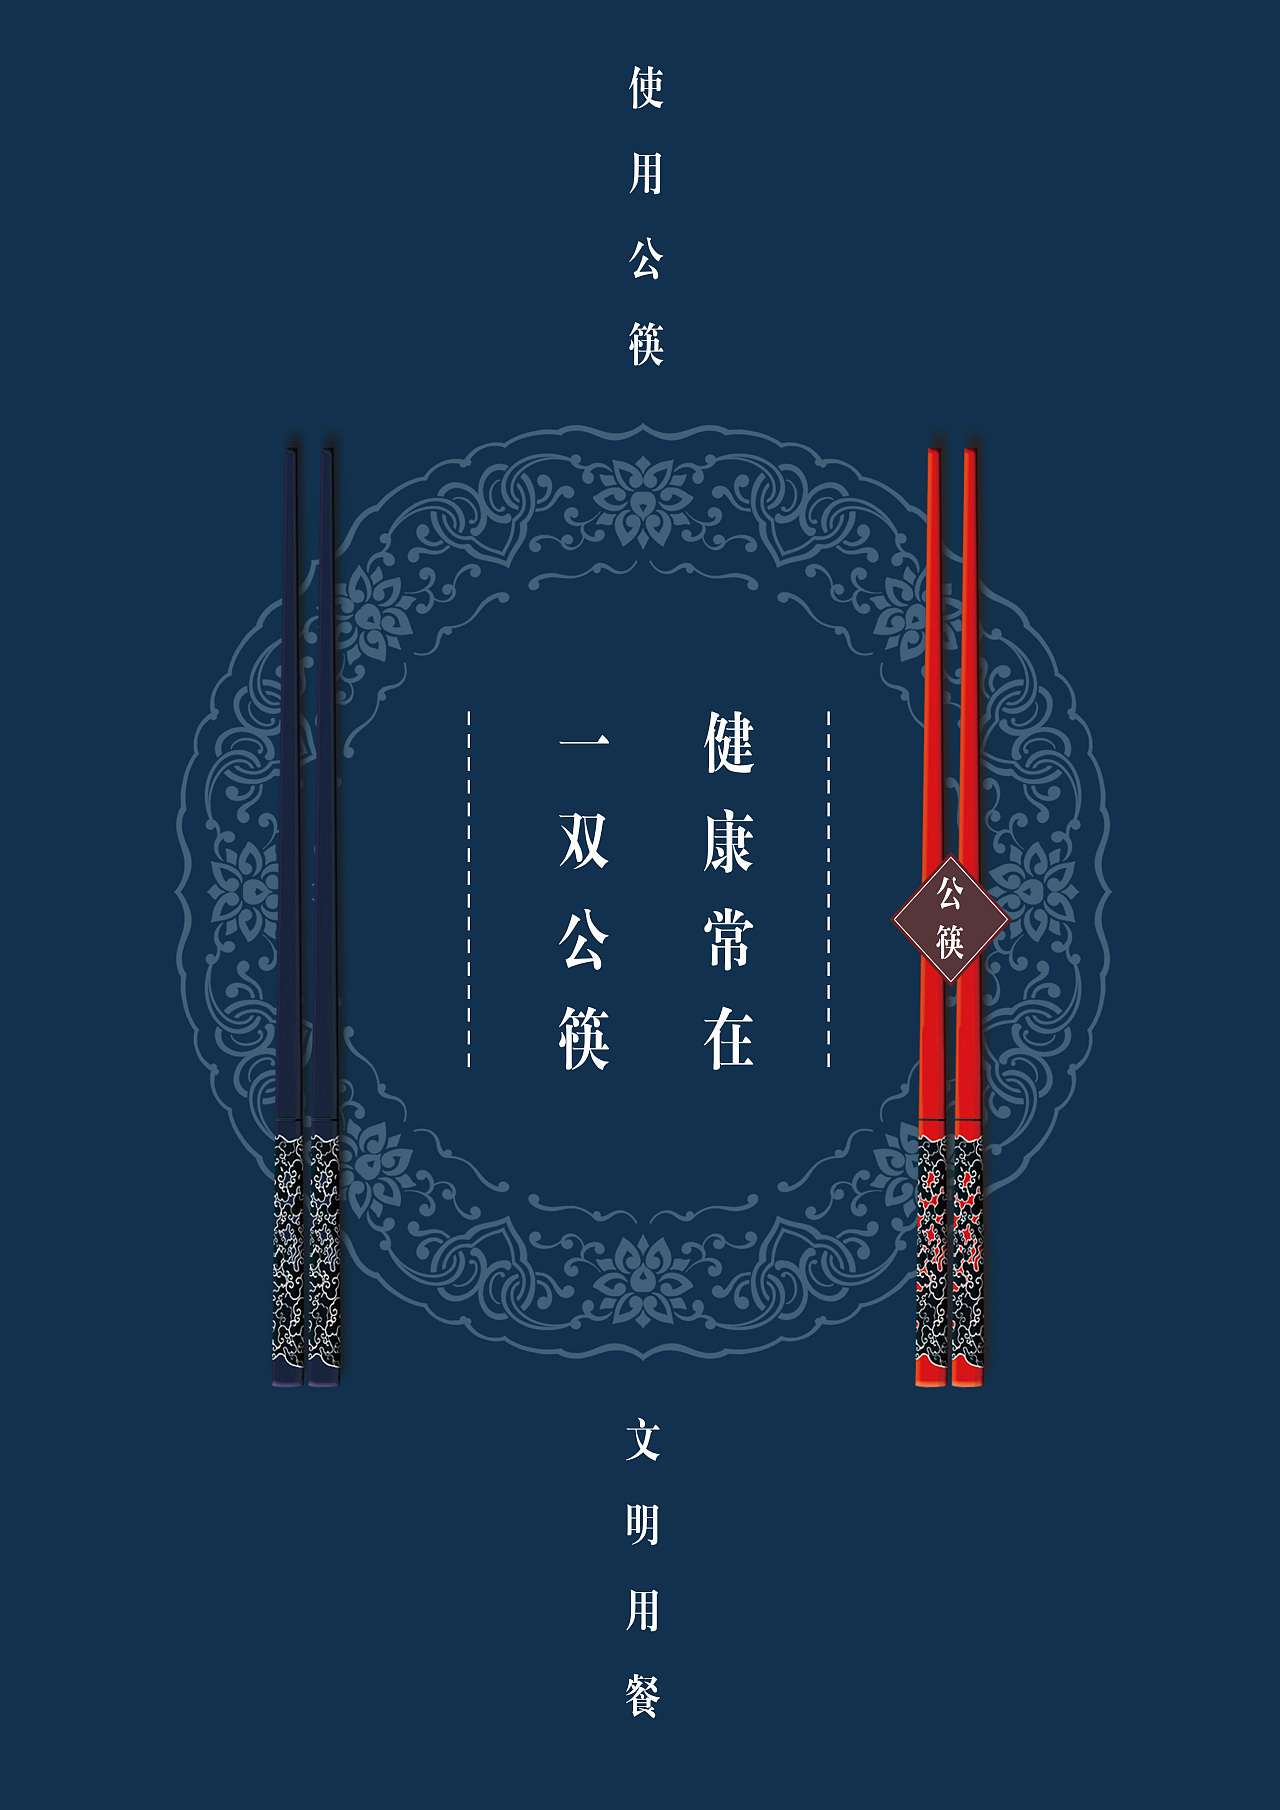 筷子宣传片图片